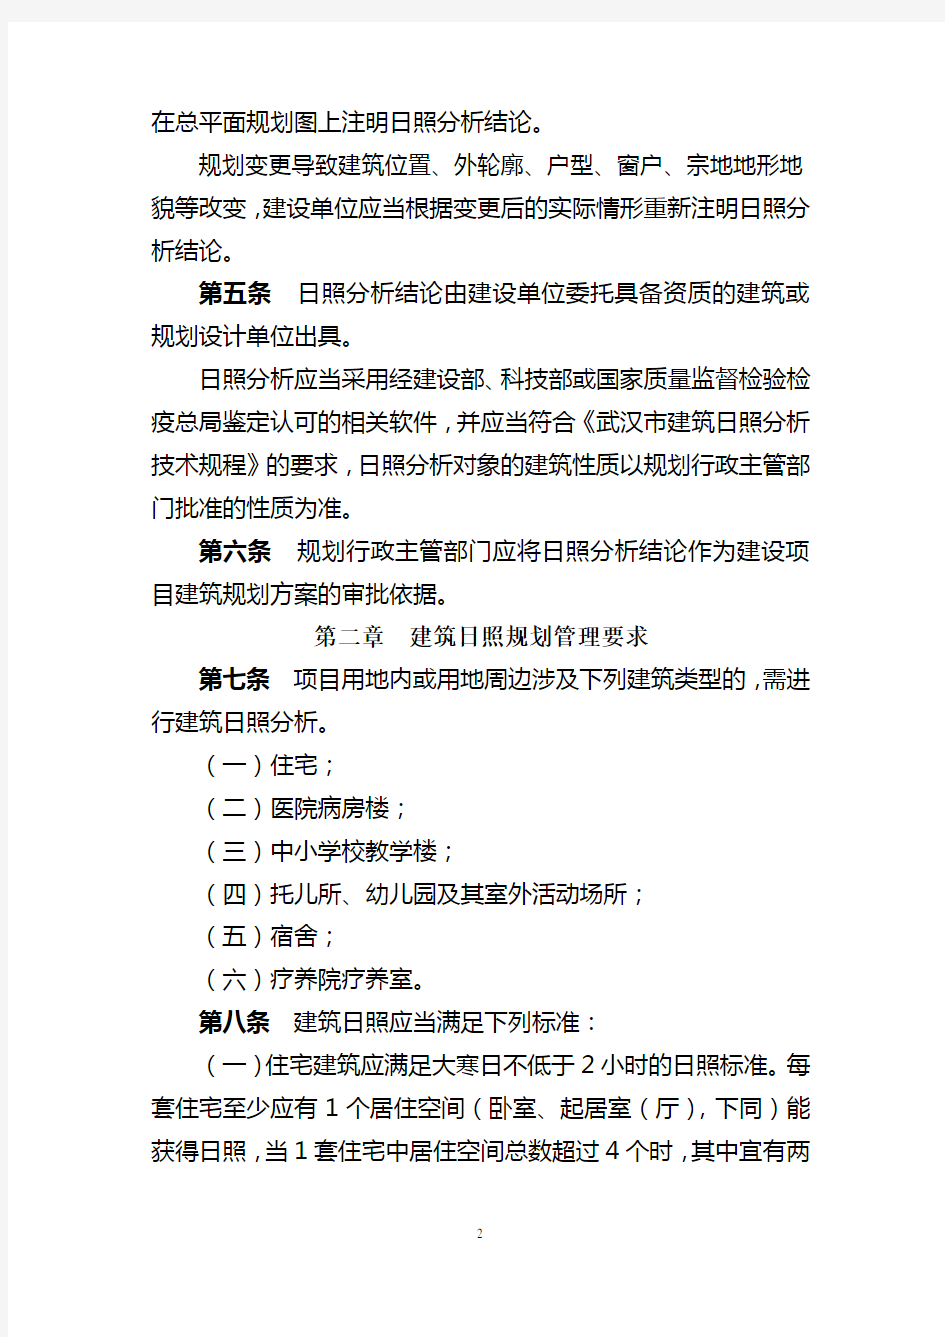 武汉市建筑日照规划管理办法及规程.